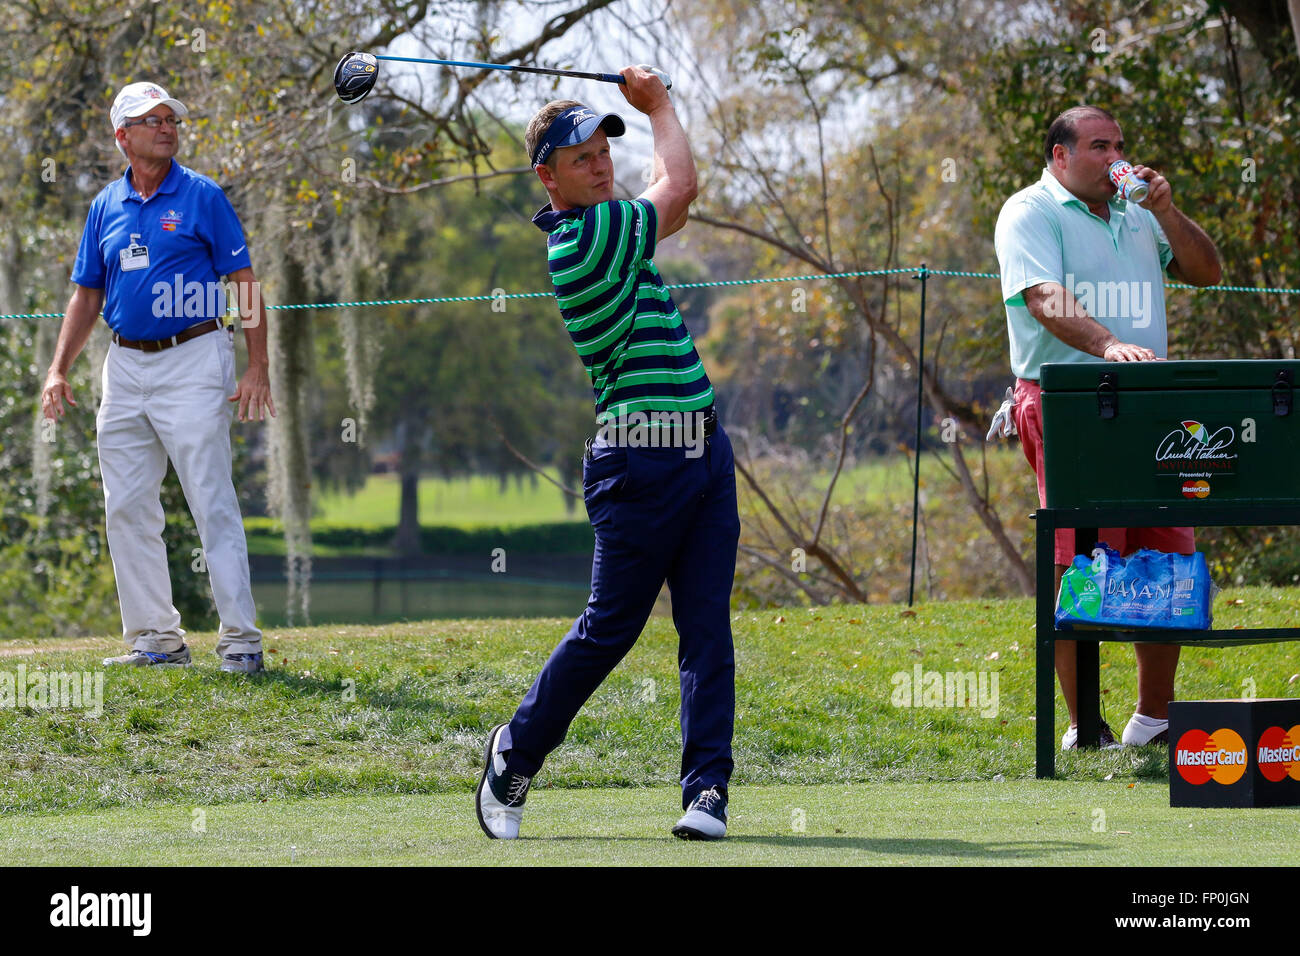 Orlando, Florida. 16. März 2016. Luke Donald, englischer Golfer spielen bei der Arnold Palmer Invitational Golfturnier im Bay Hill Golf Club, Orlando, Florida-Credit: Findlay/Alamy Live News Stockfoto